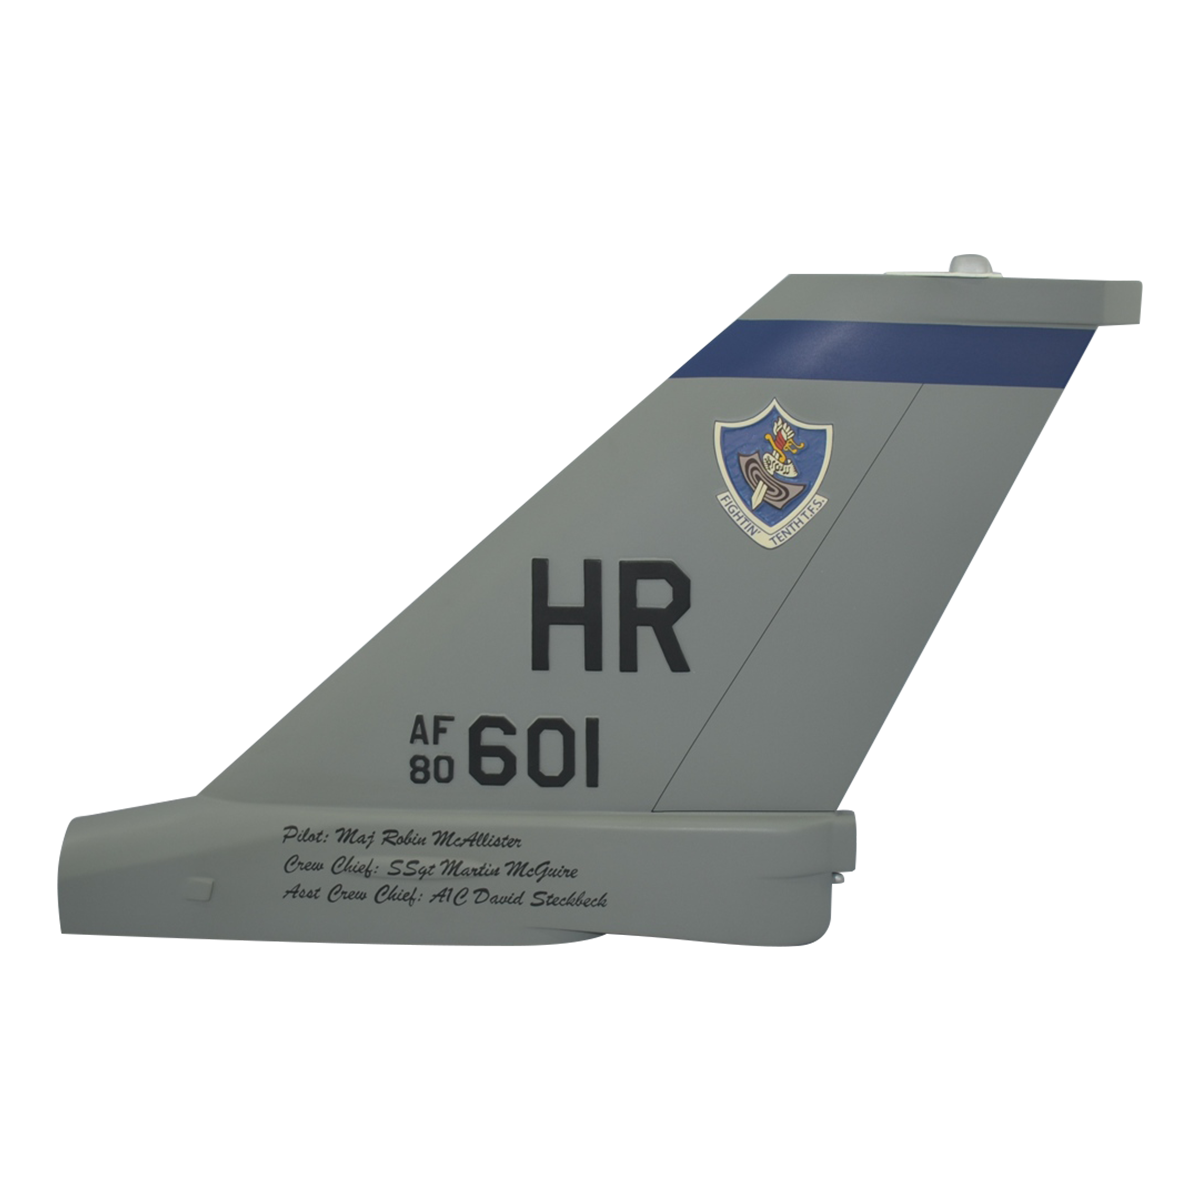 HR-601 AF-80 Tail Flash